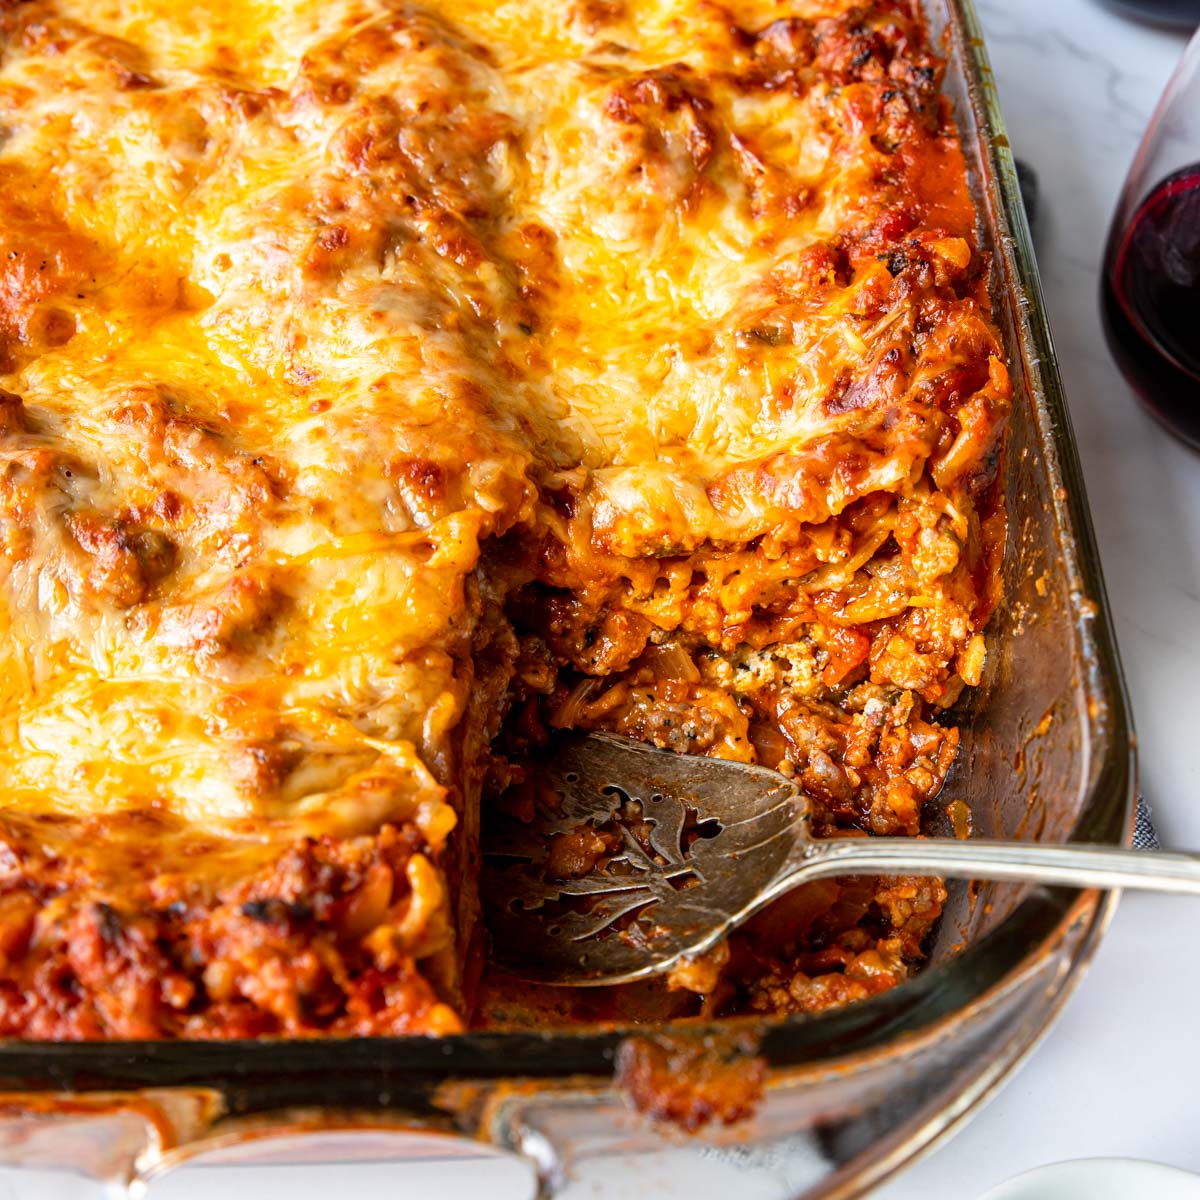 https://momsdinner.net/wp-content/uploads/2022/01/Best-Homemade-Meat-Lasagna-Recipe-1.jpg